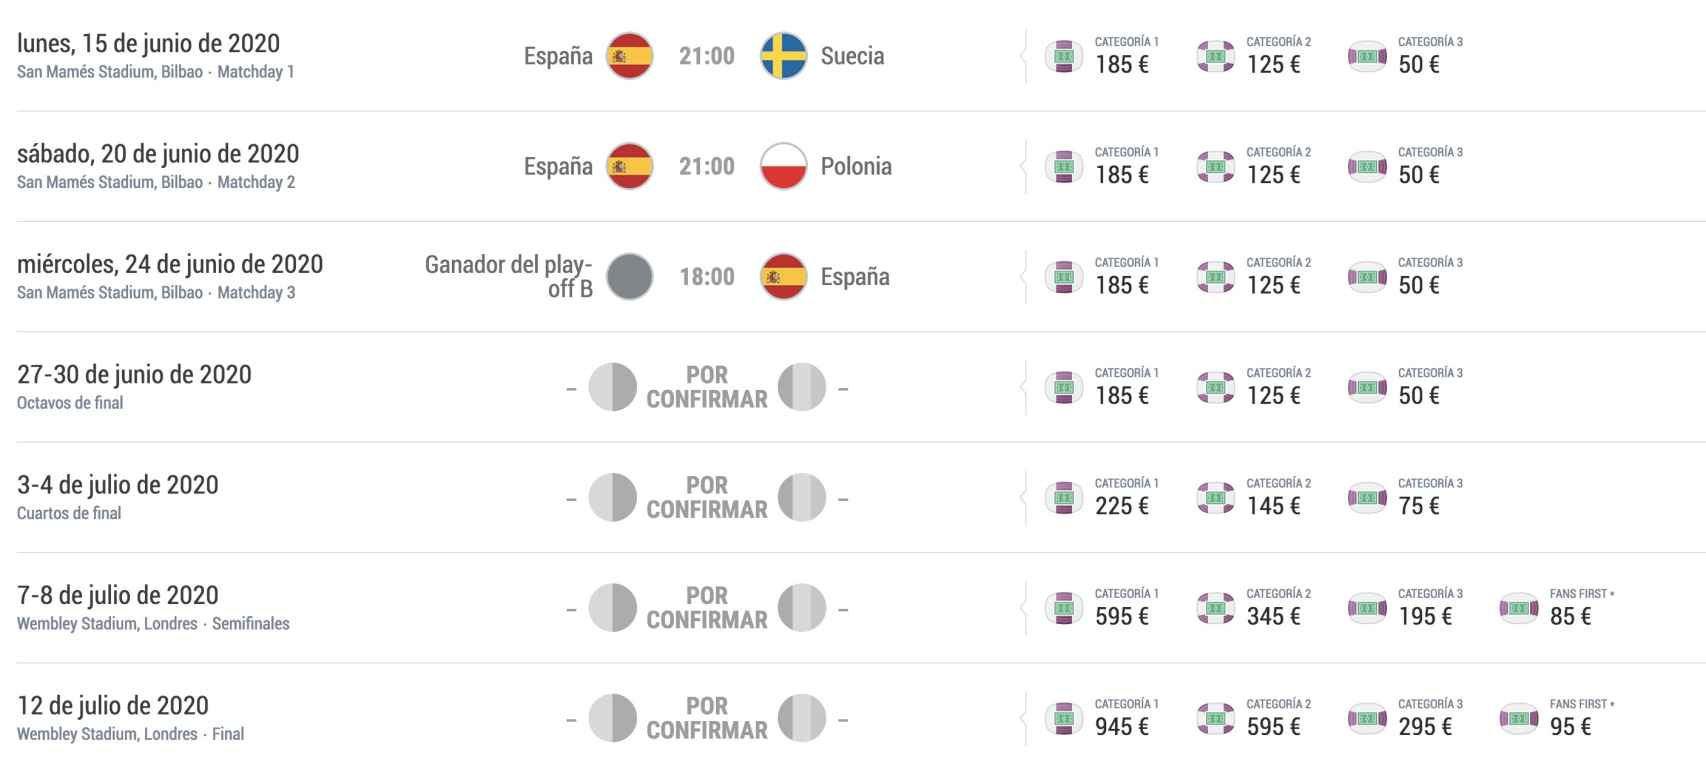 Los precios de las entradas para los partidos de España en la Eurocopa 2020